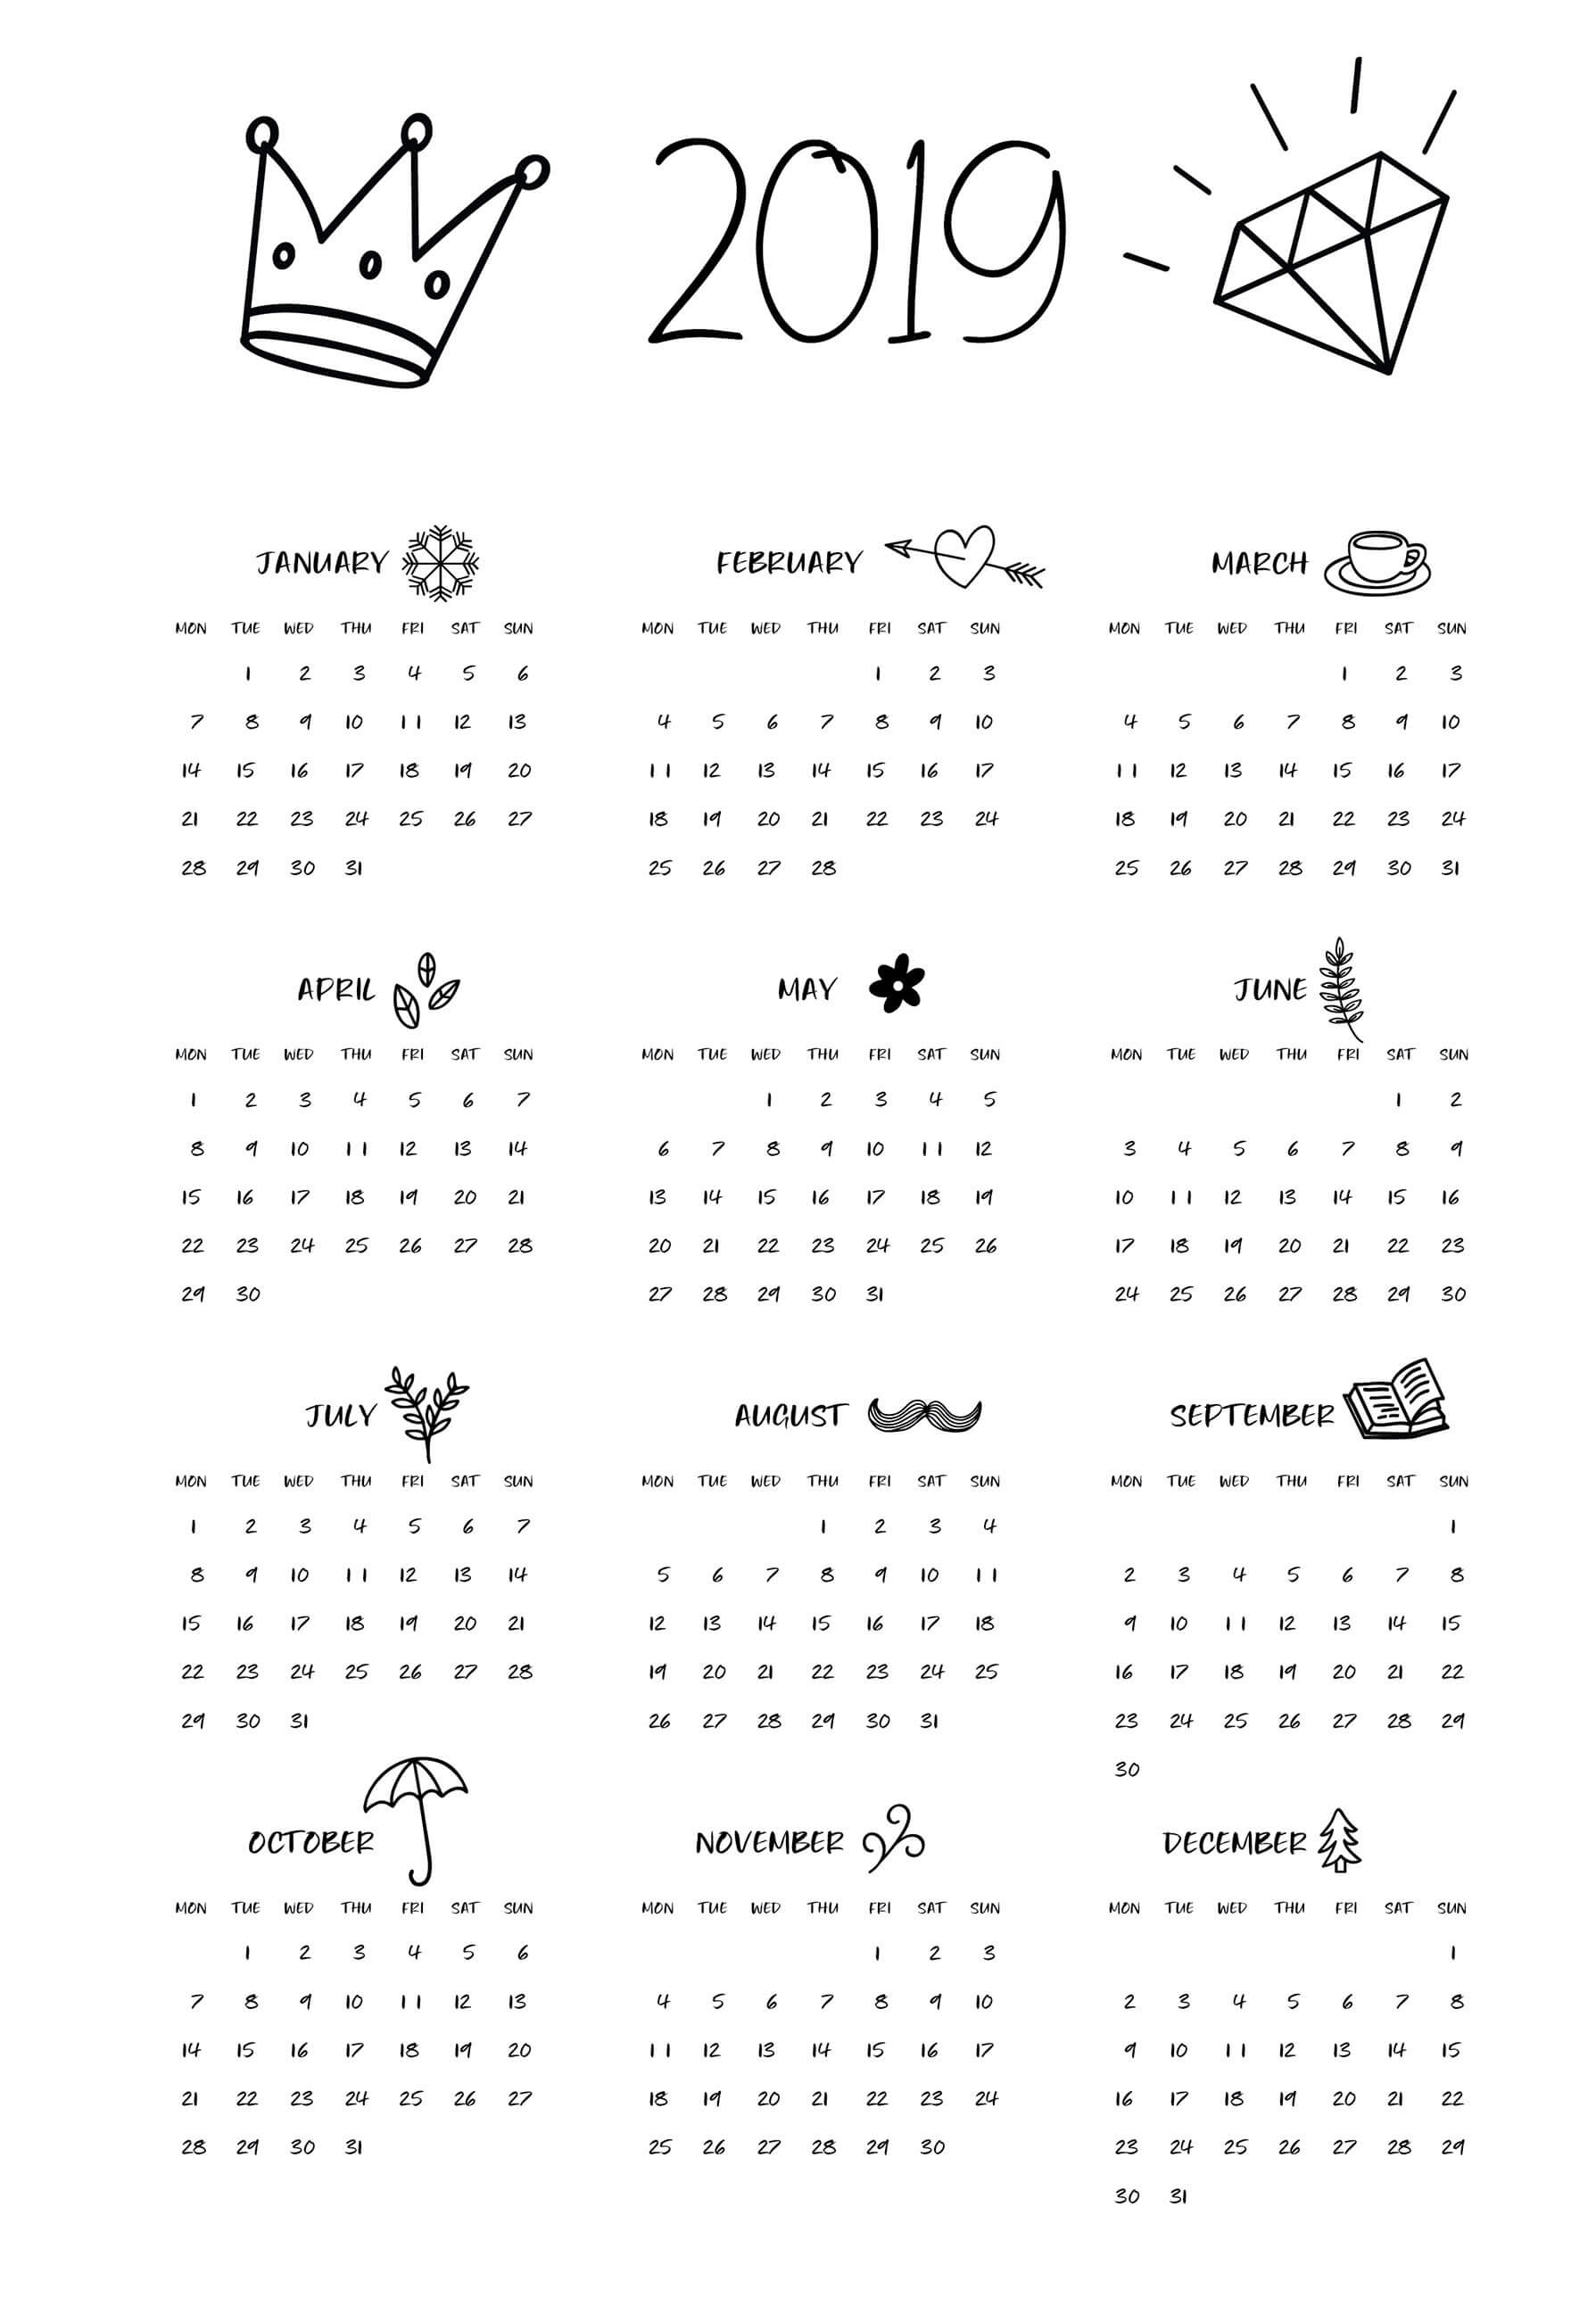 2019 Calendar - Beta Calendars Black And White Calendar Template